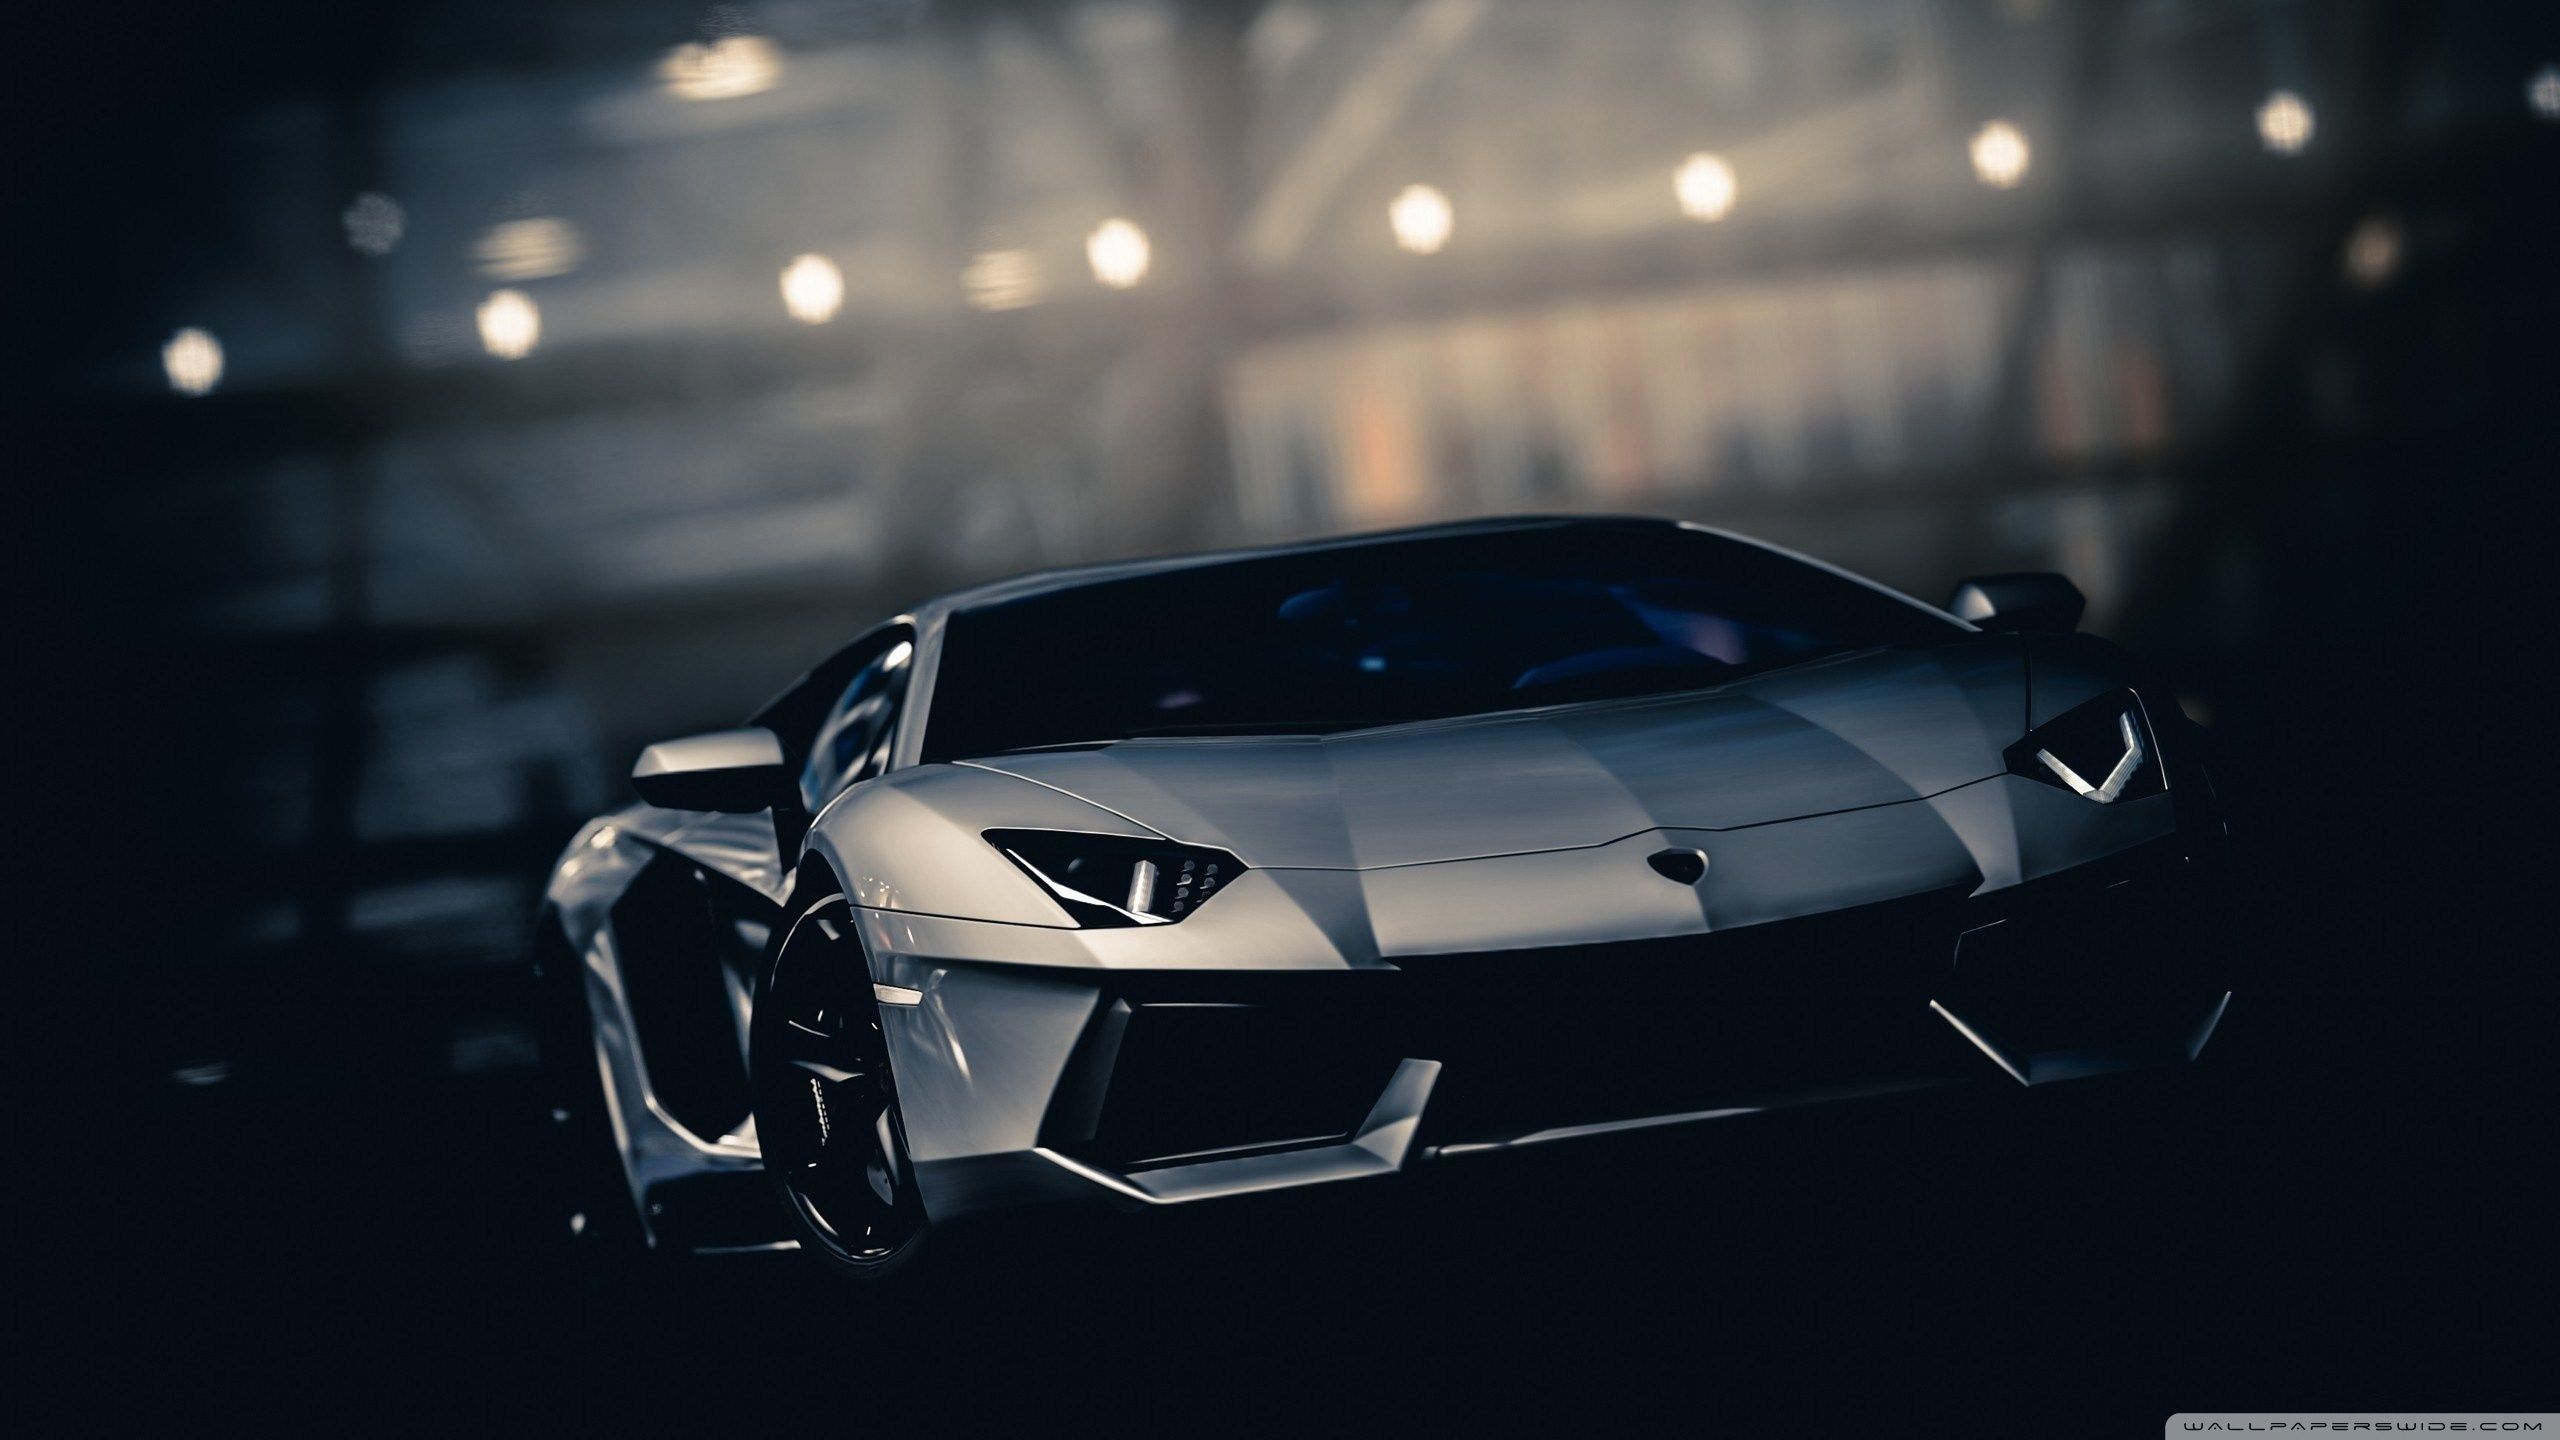 Bạn đang tìm kiếm hình nền Lamborghini Aventador 4k cho PC của mình? Hãy thử xem qua ảnh siêu xe đầy ấn tượng, chi tiết và vô cùng sắc nét. Với độ phân giải 4k, hình nền Lamborghini Aventador sẽ giúp máy tính của bạn trở nên thật sự đặc biệt và nổi bật.